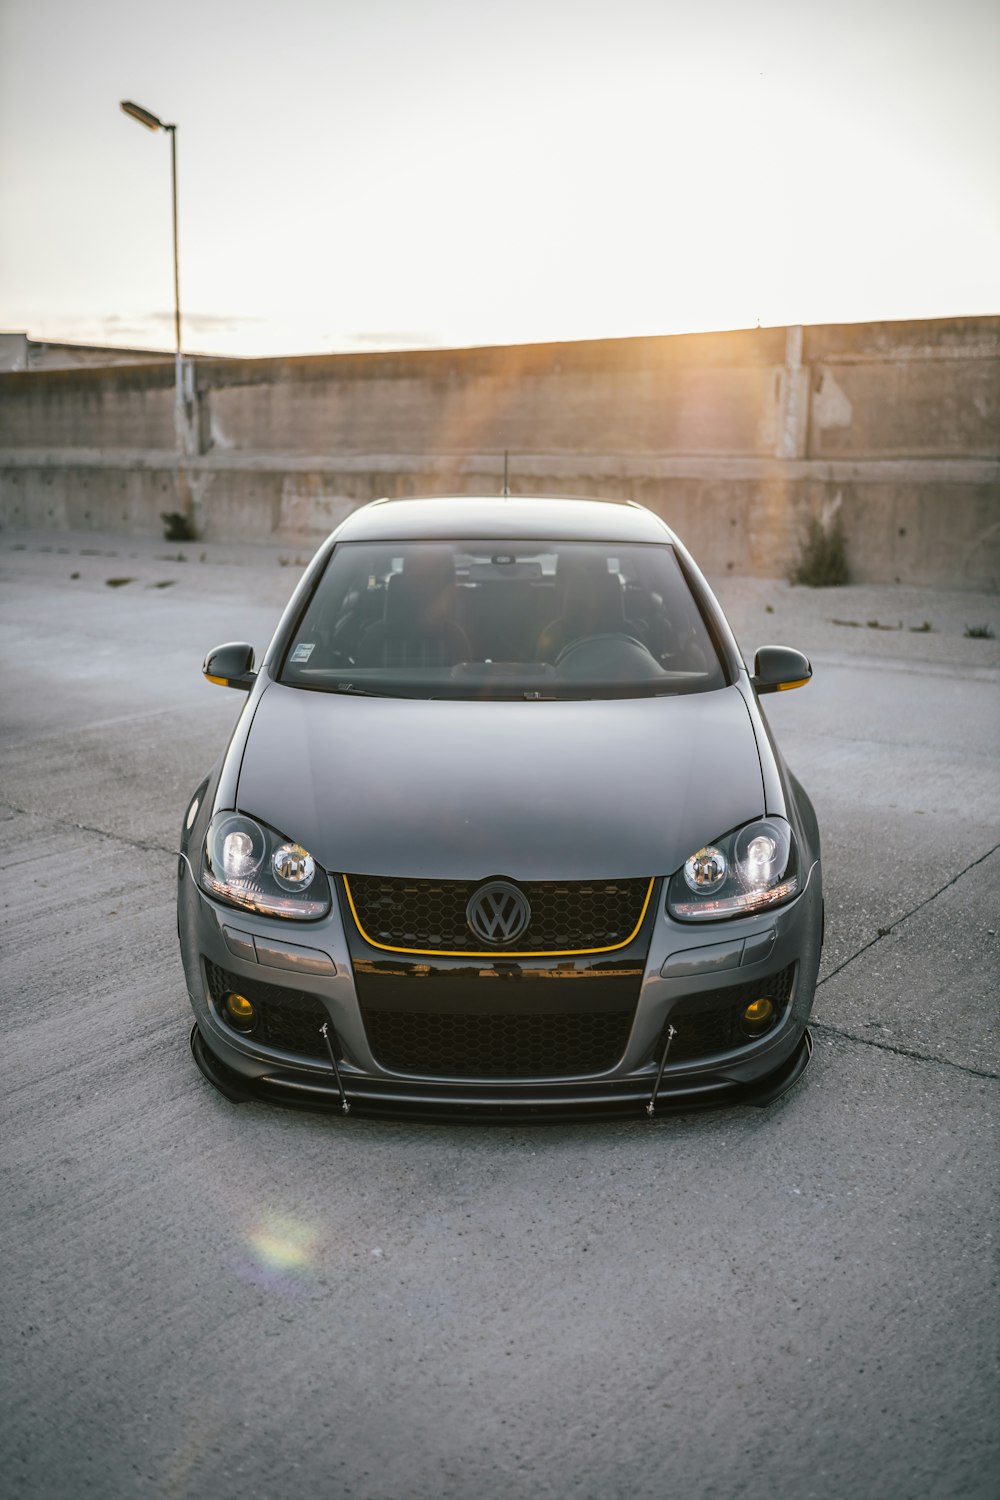 voiture Volkswagen argentée sur une route grise